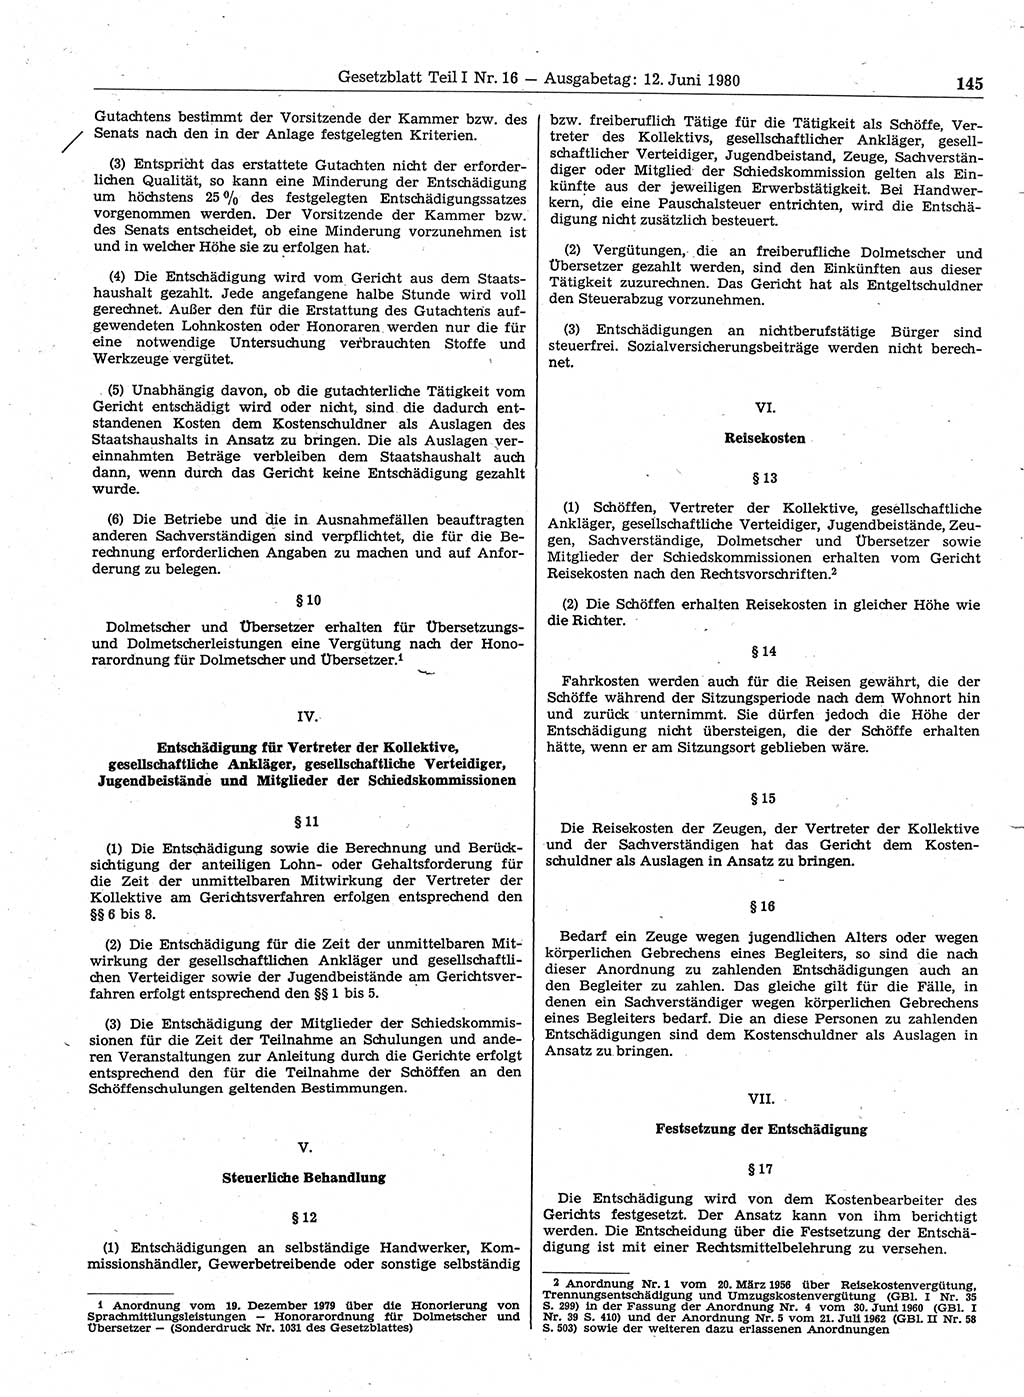 Gesetzblatt (GBl.) der Deutschen Demokratischen Republik (DDR) Teil Ⅰ 1980, Seite 145 (GBl. DDR Ⅰ 1980, S. 145)